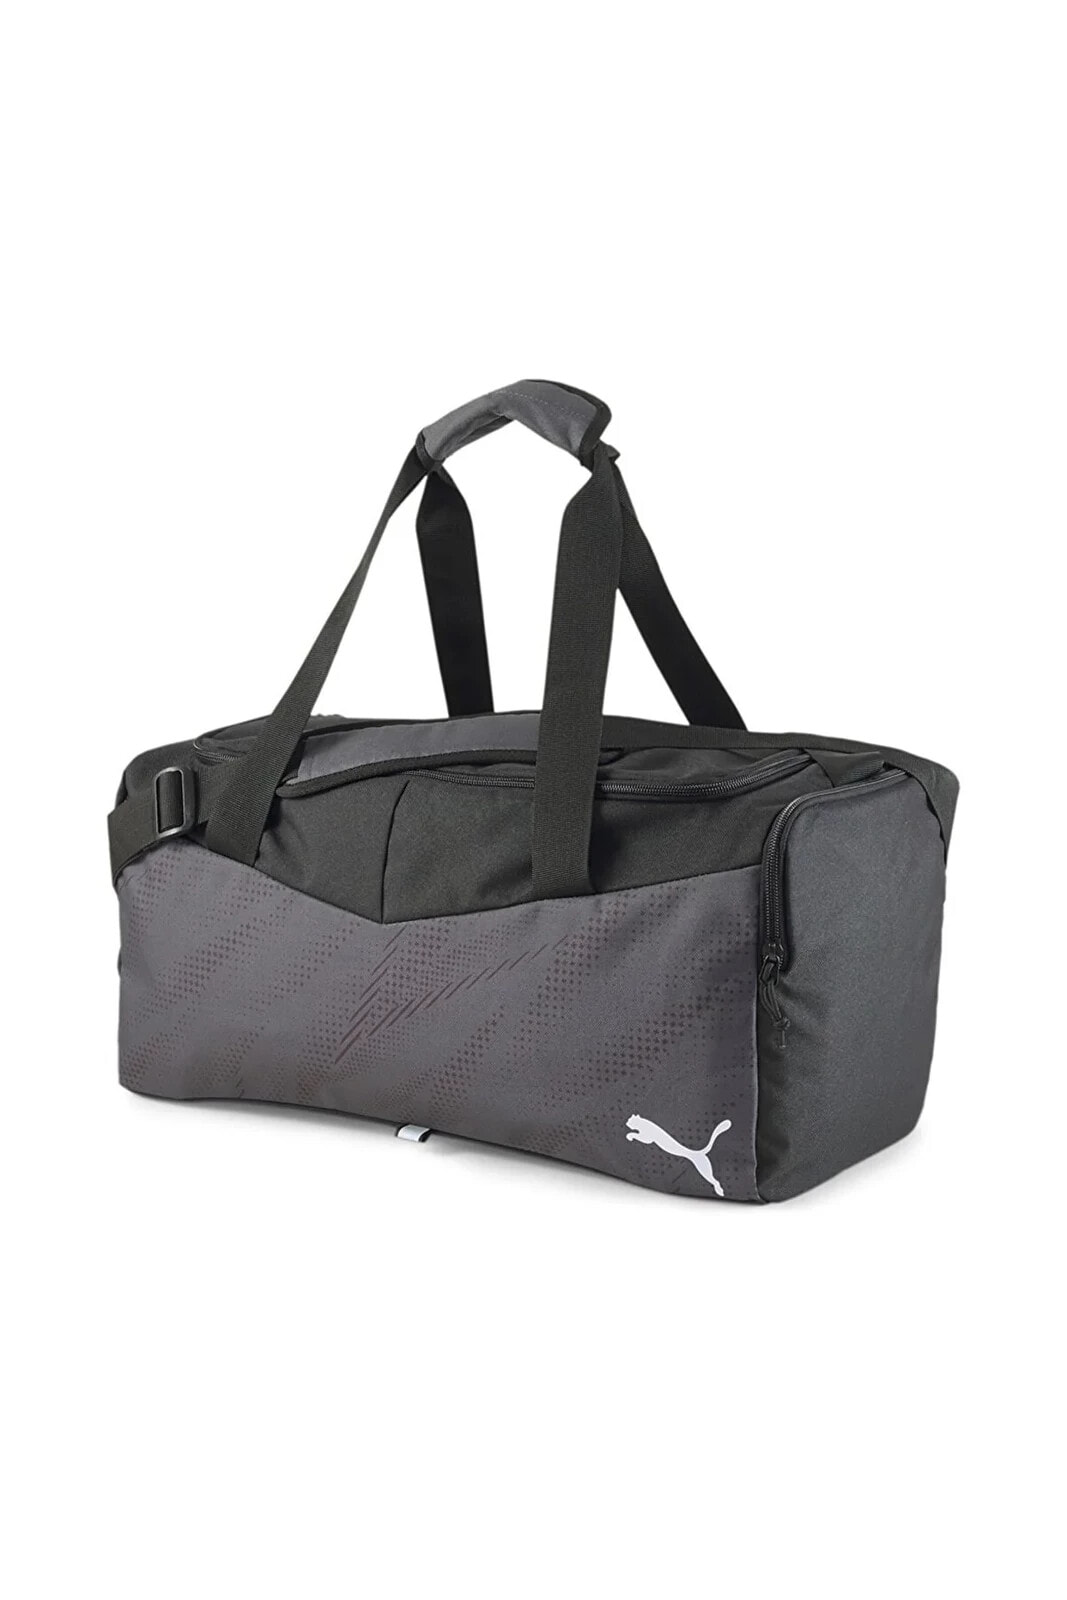 Individualrıse Small Bag Spor Çantası 07932303 (48x22x25cm)